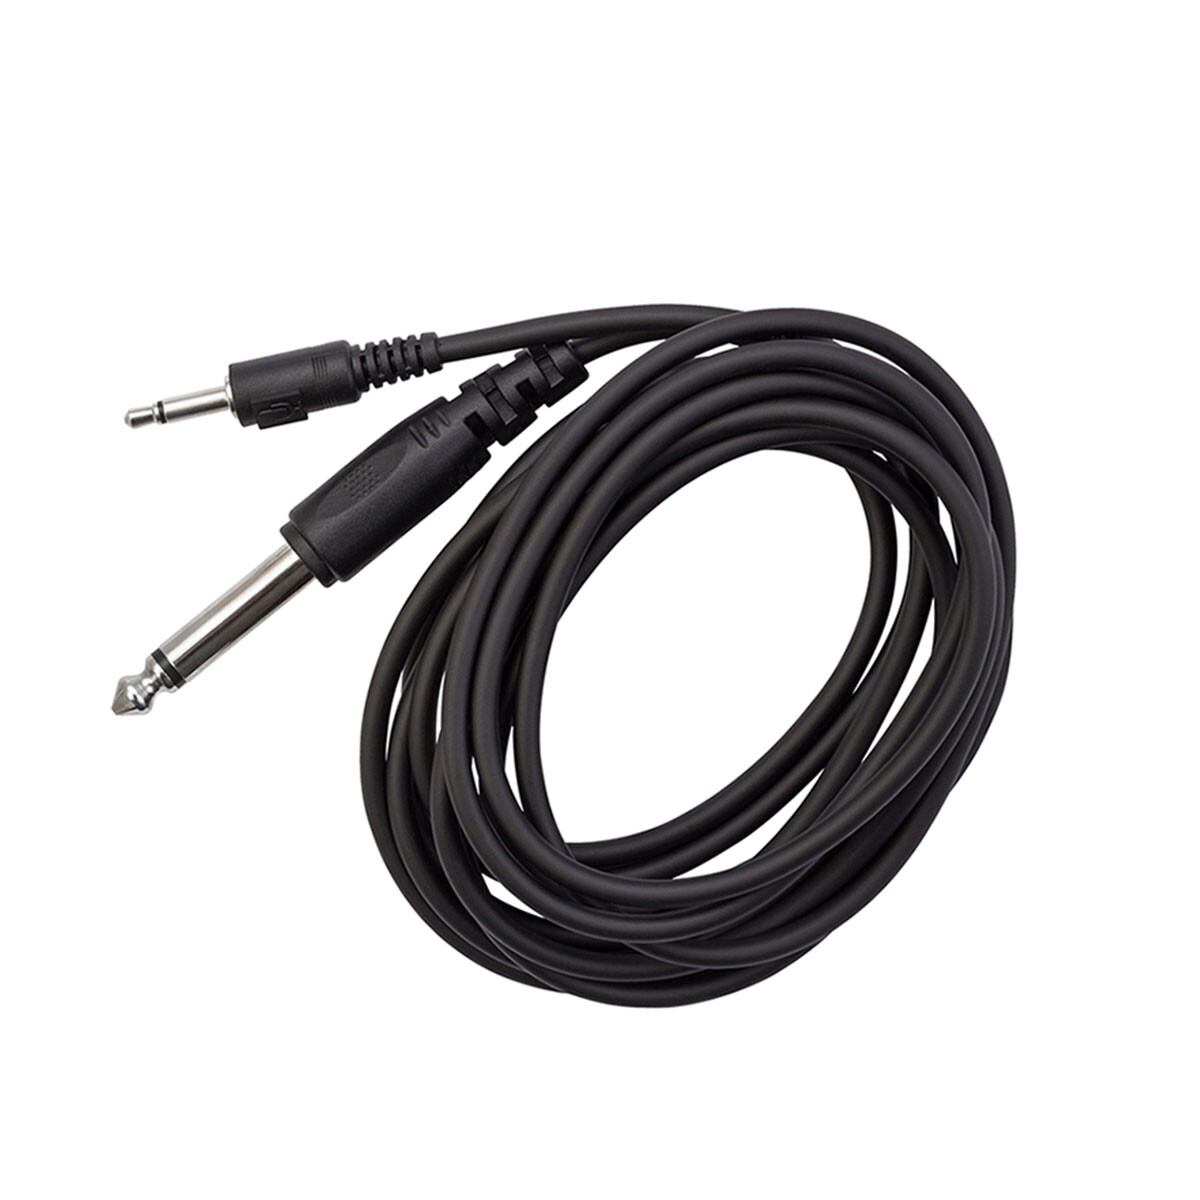 Cable Adaptador Kna 3.5 A 1/4 Para Micros Kna 